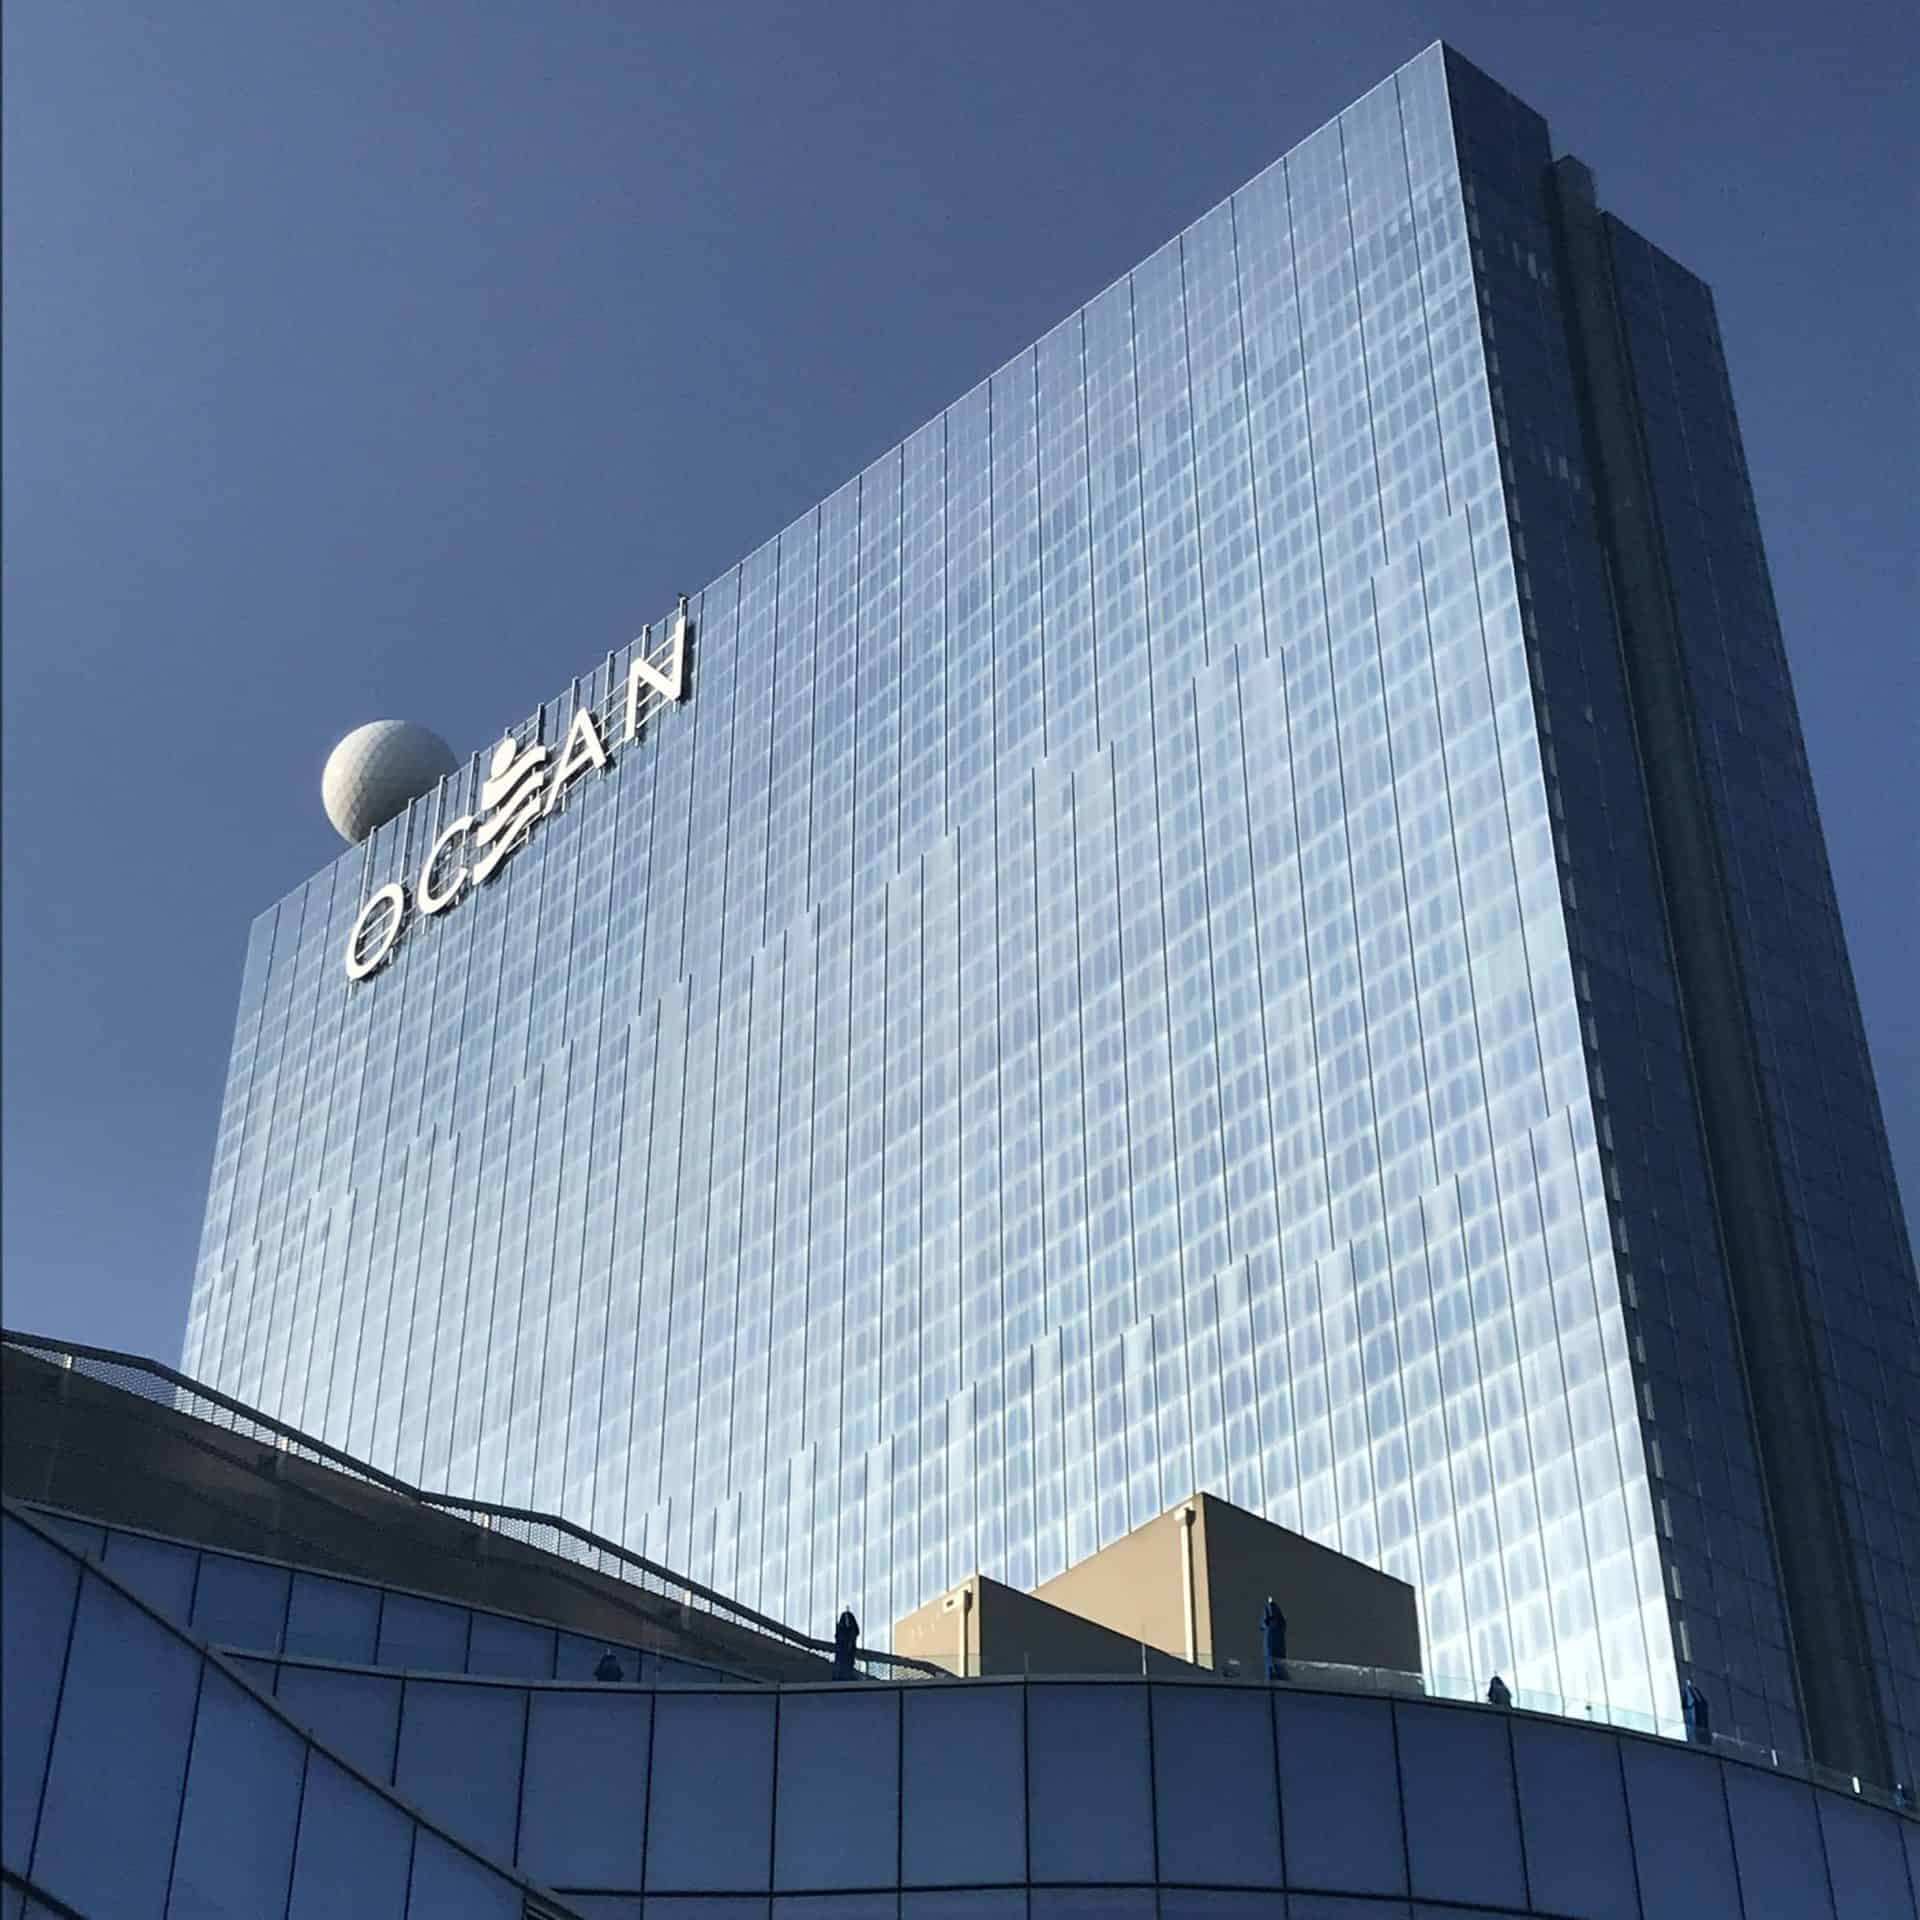 ocean casino resort atlantic city phone